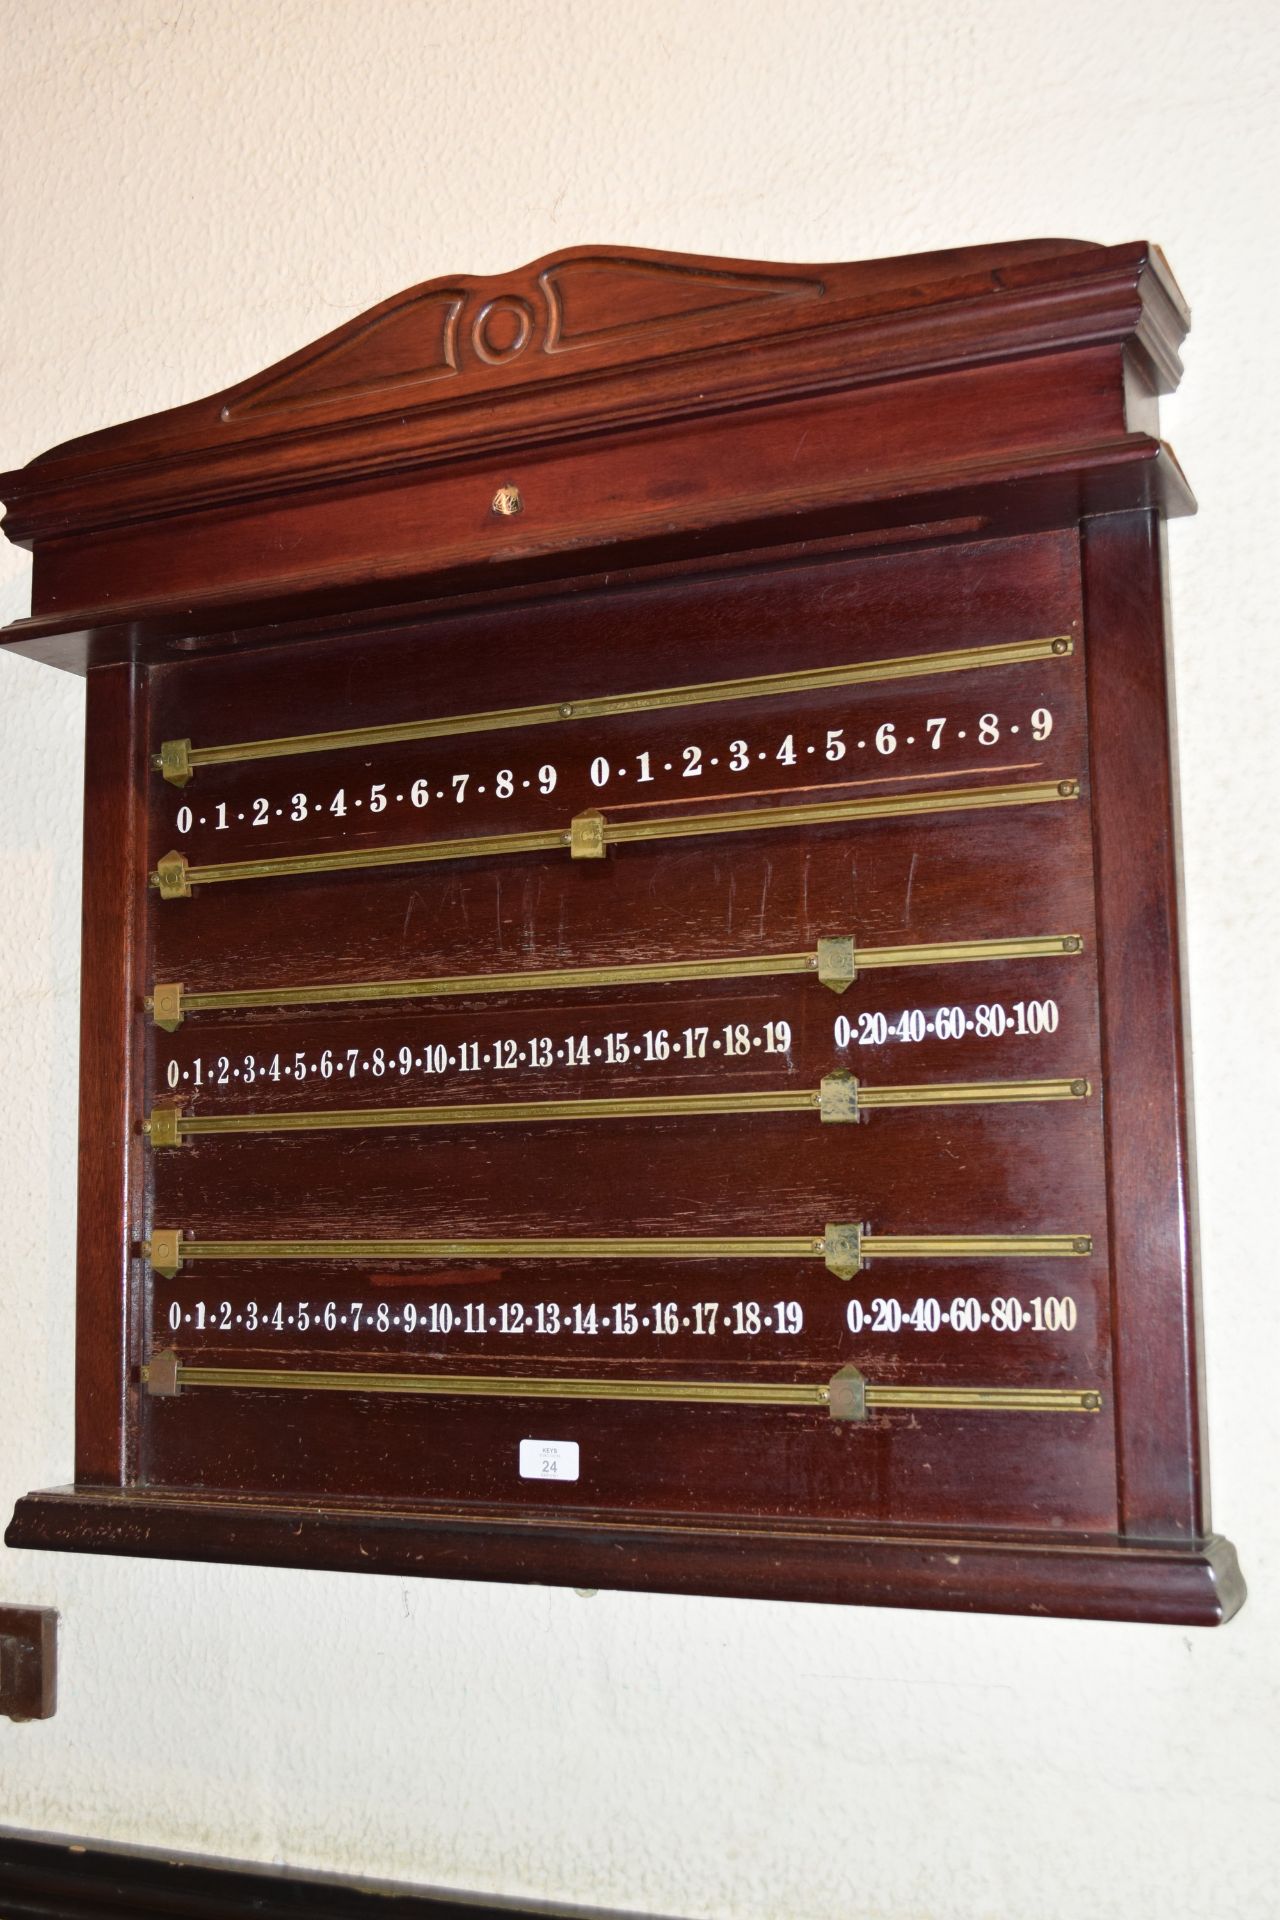 BCE snooker score board, height 75 x 72cm wide